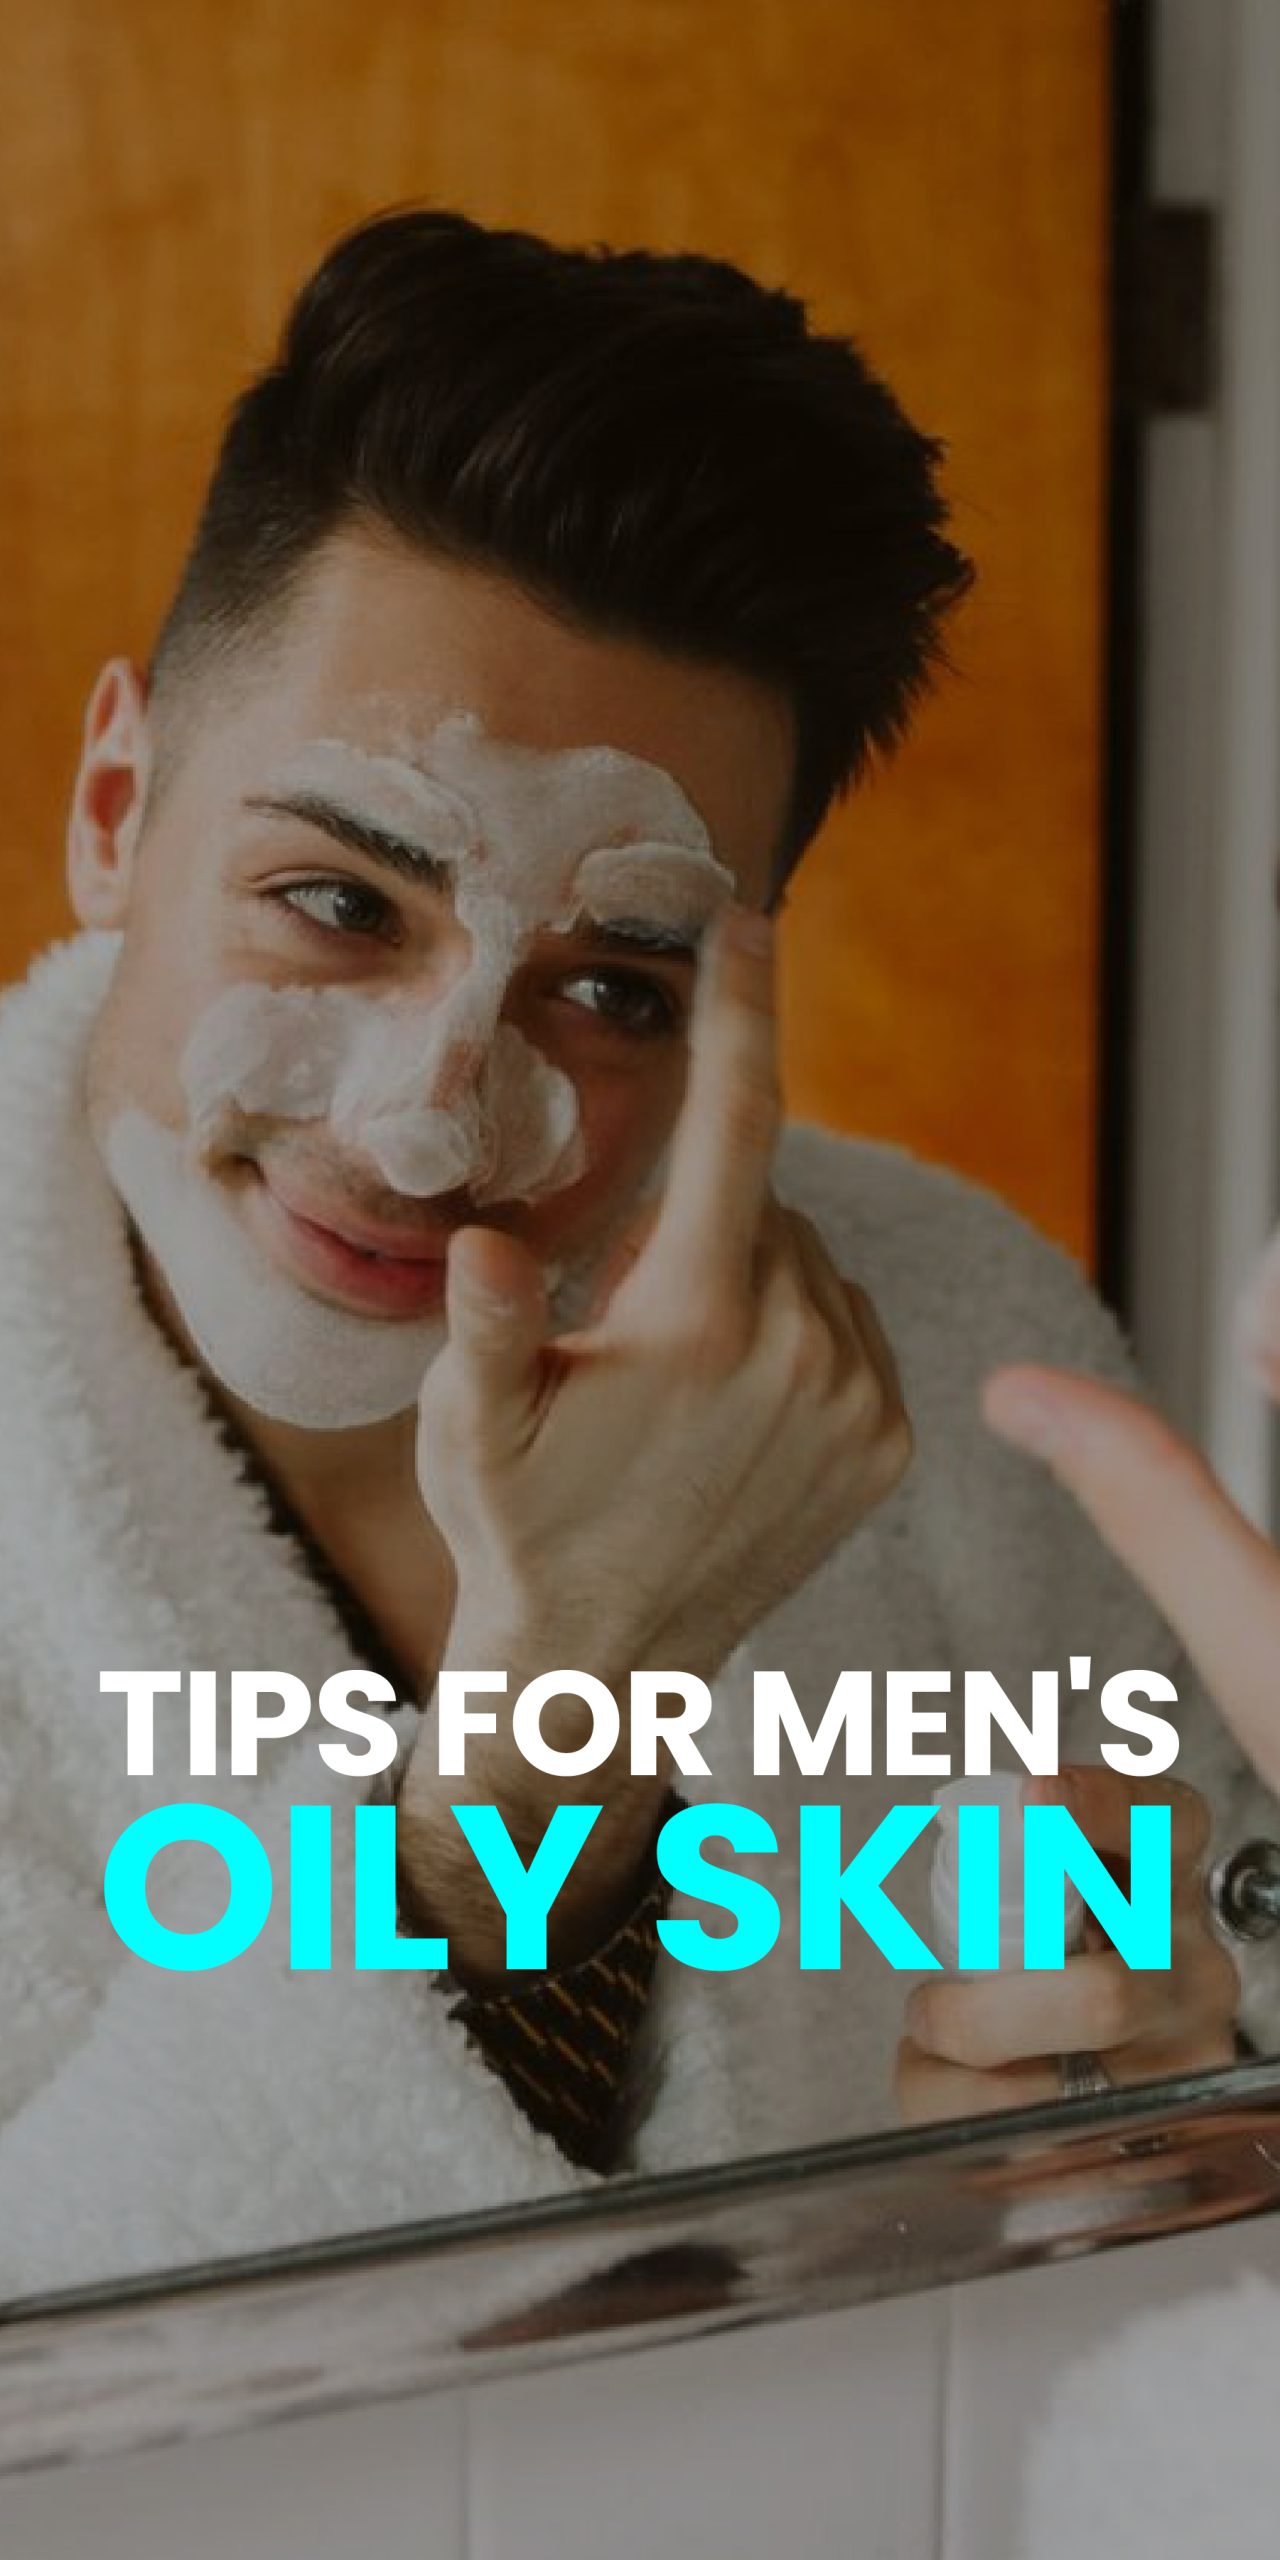 TIPS FOR MEN’S OIKY SKIN